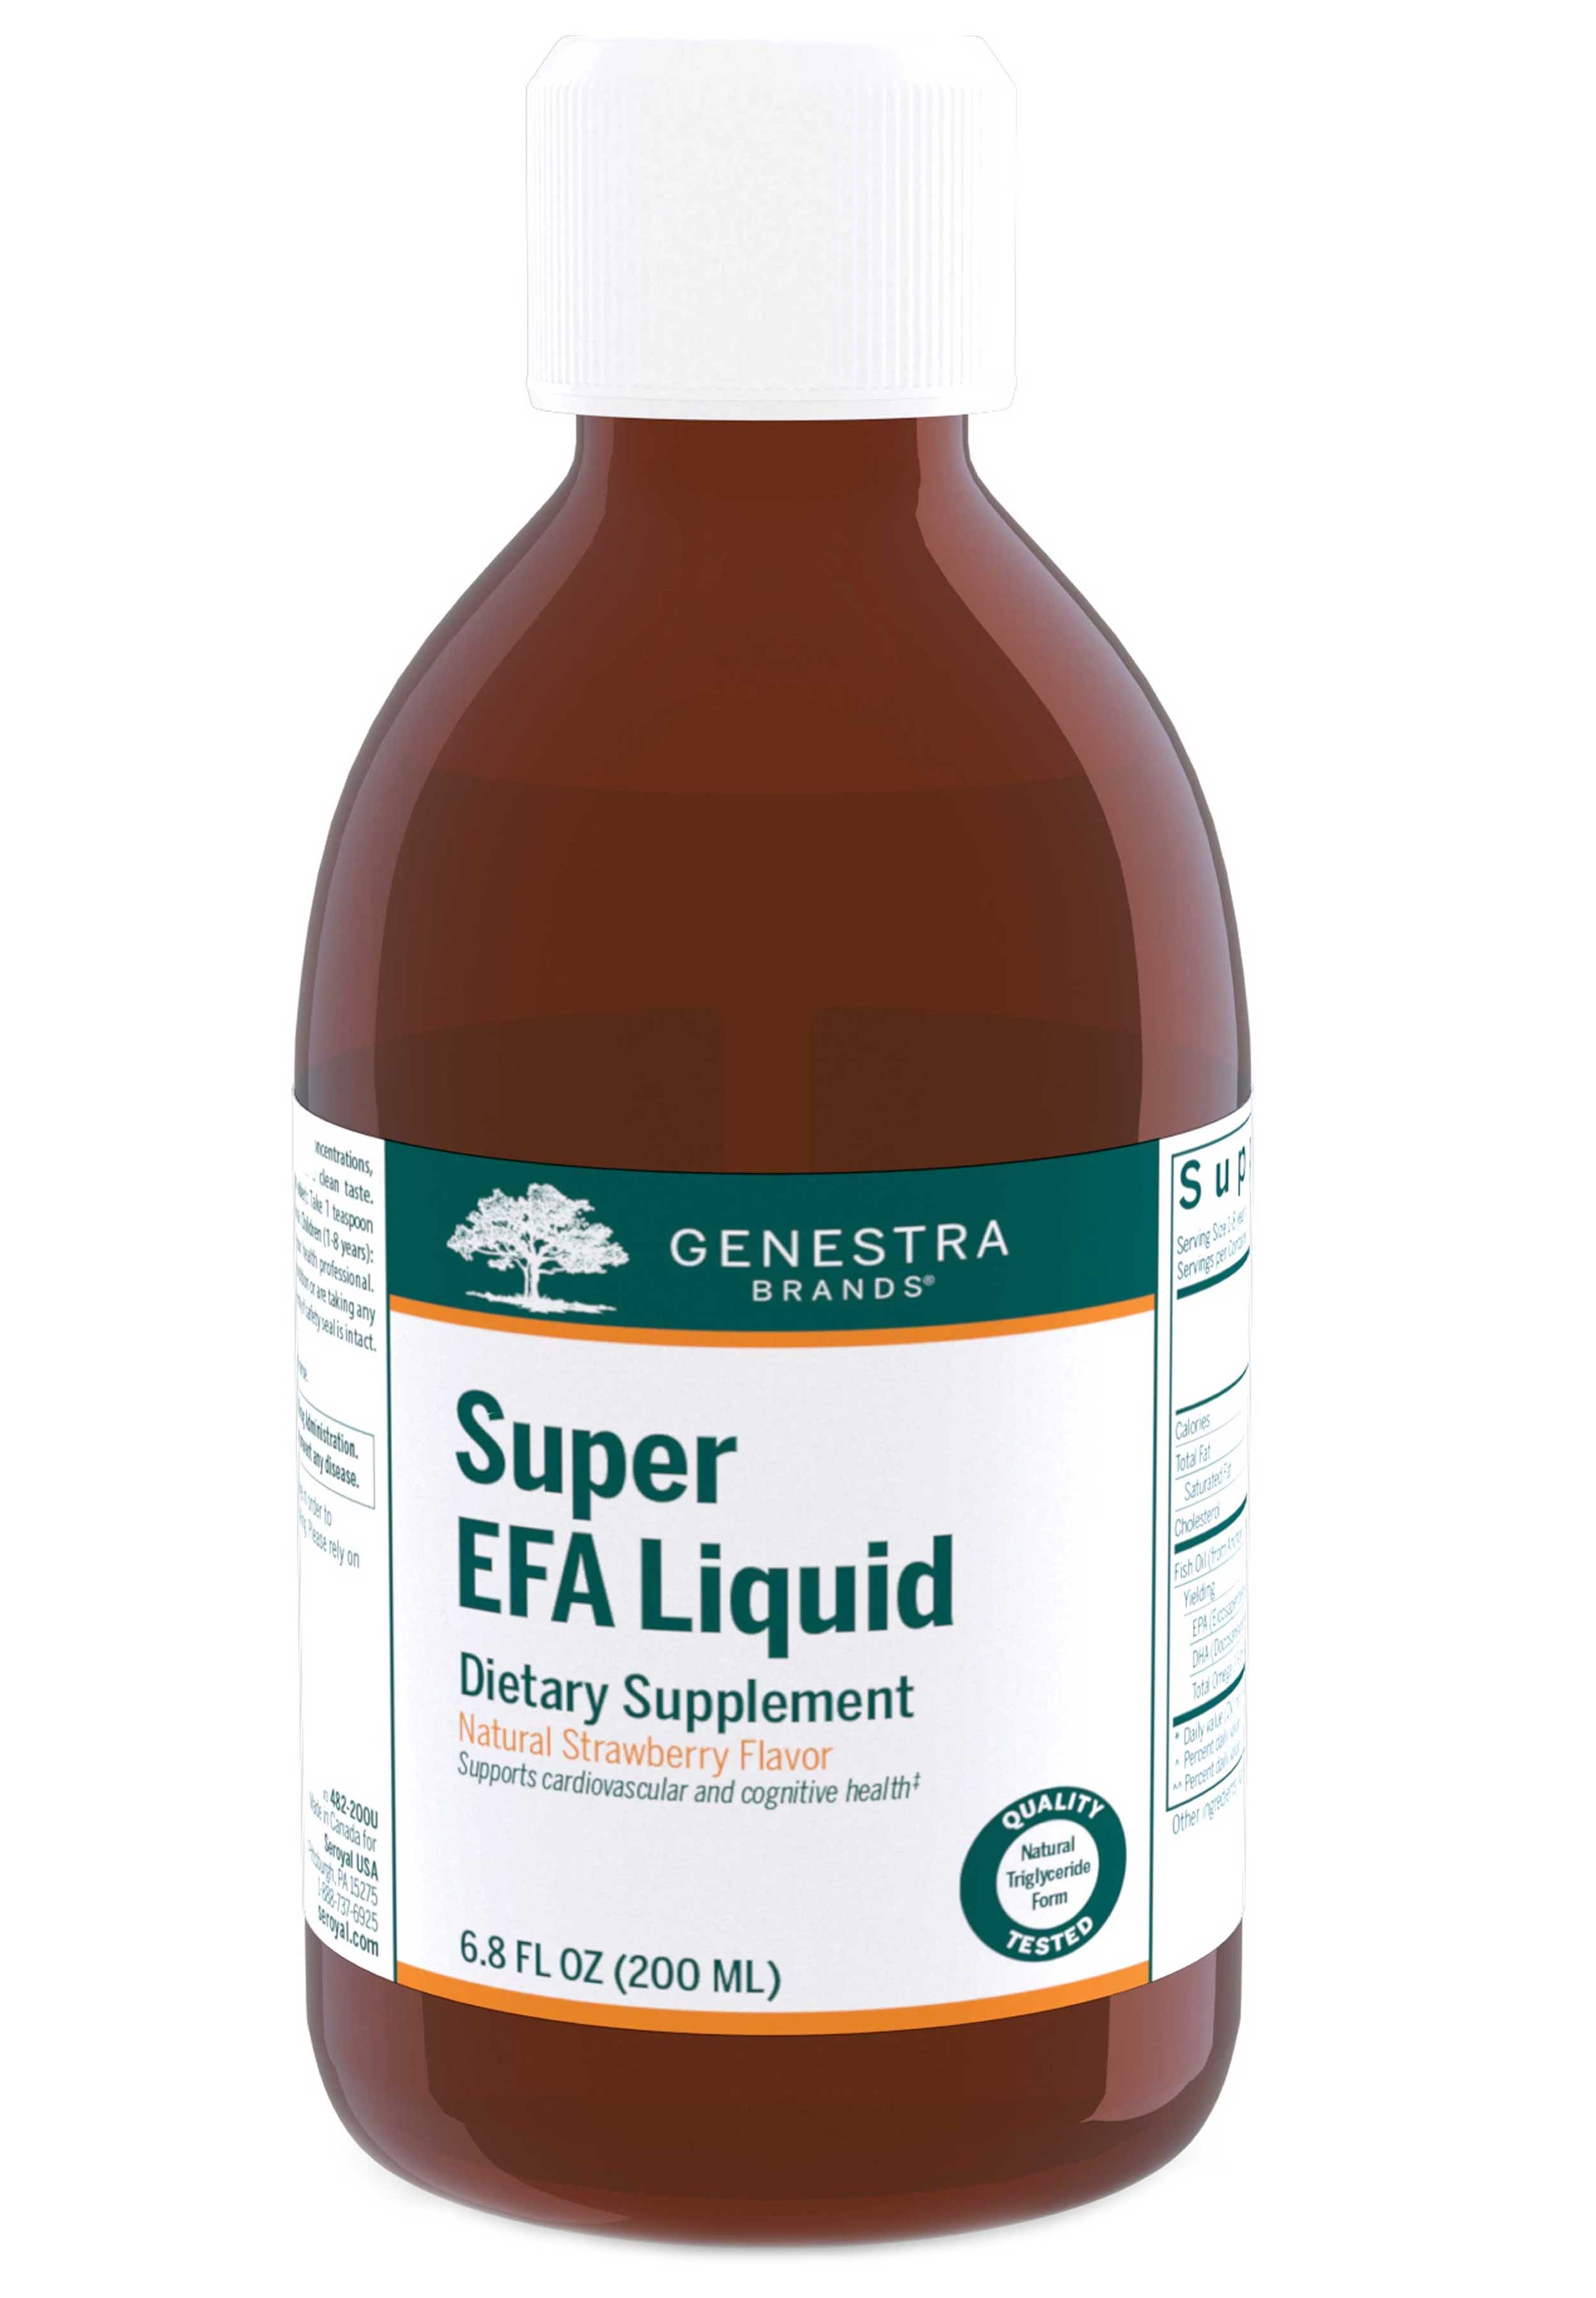 Genestra Brands Super EFA Liquid